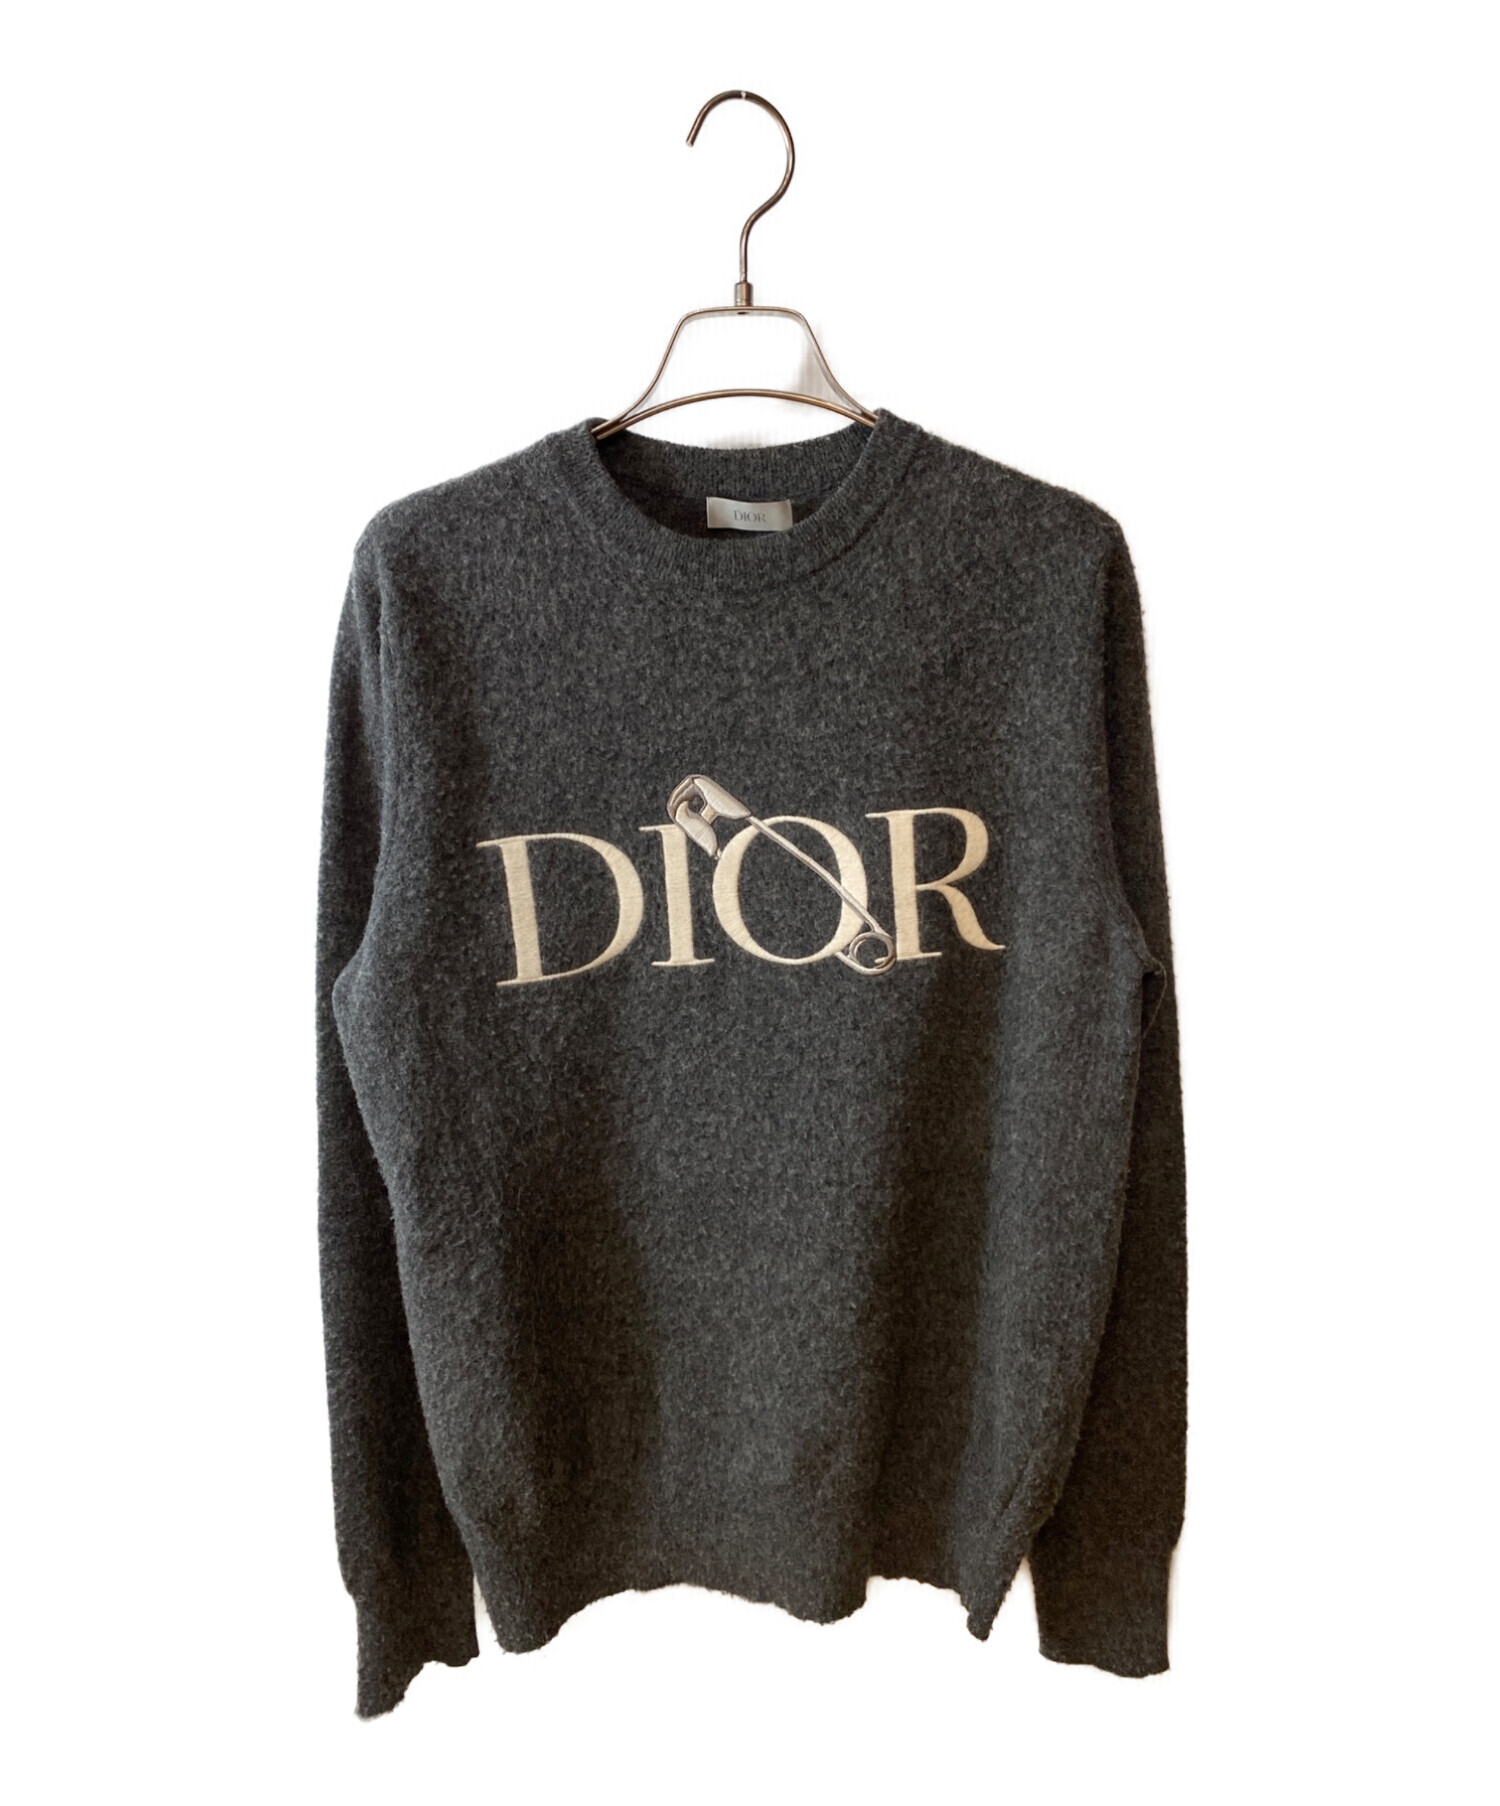 完売レア Dior Tシャツ Judy Blameコラボ キッズ Sサイズすり替え防止 ...